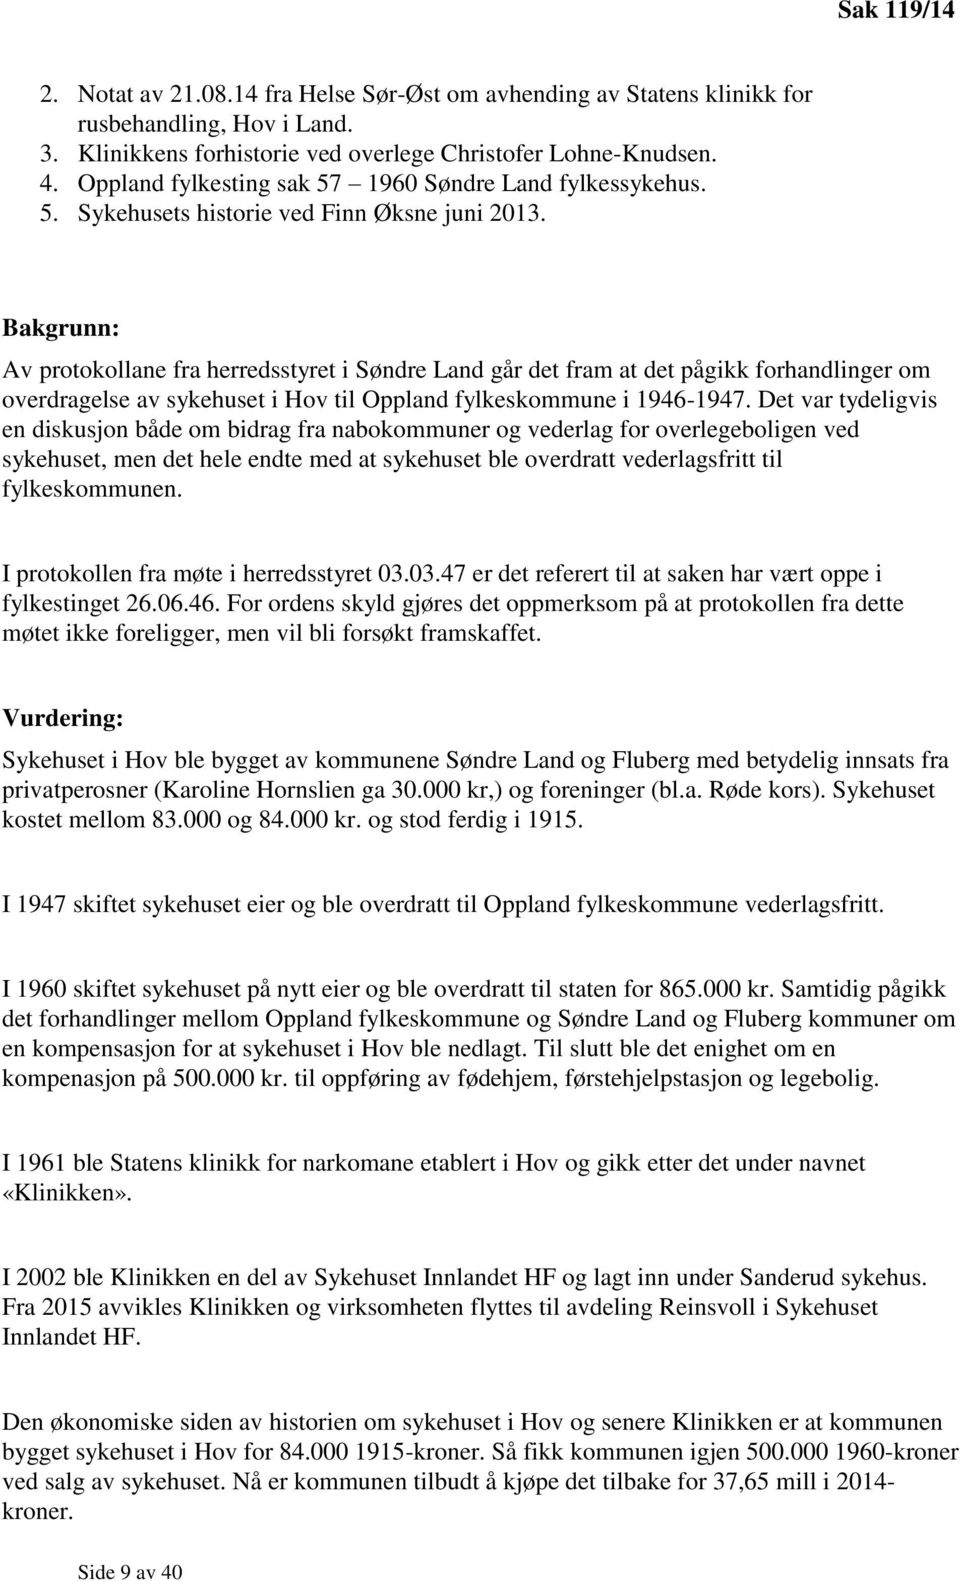 Bakgrunn: Av protokollane fra herredsstyret i Søndre Land går det fram at det pågikk forhandlinger om overdragelse av sykehuset i Hov til Oppland fylkeskommune i 1946-1947.